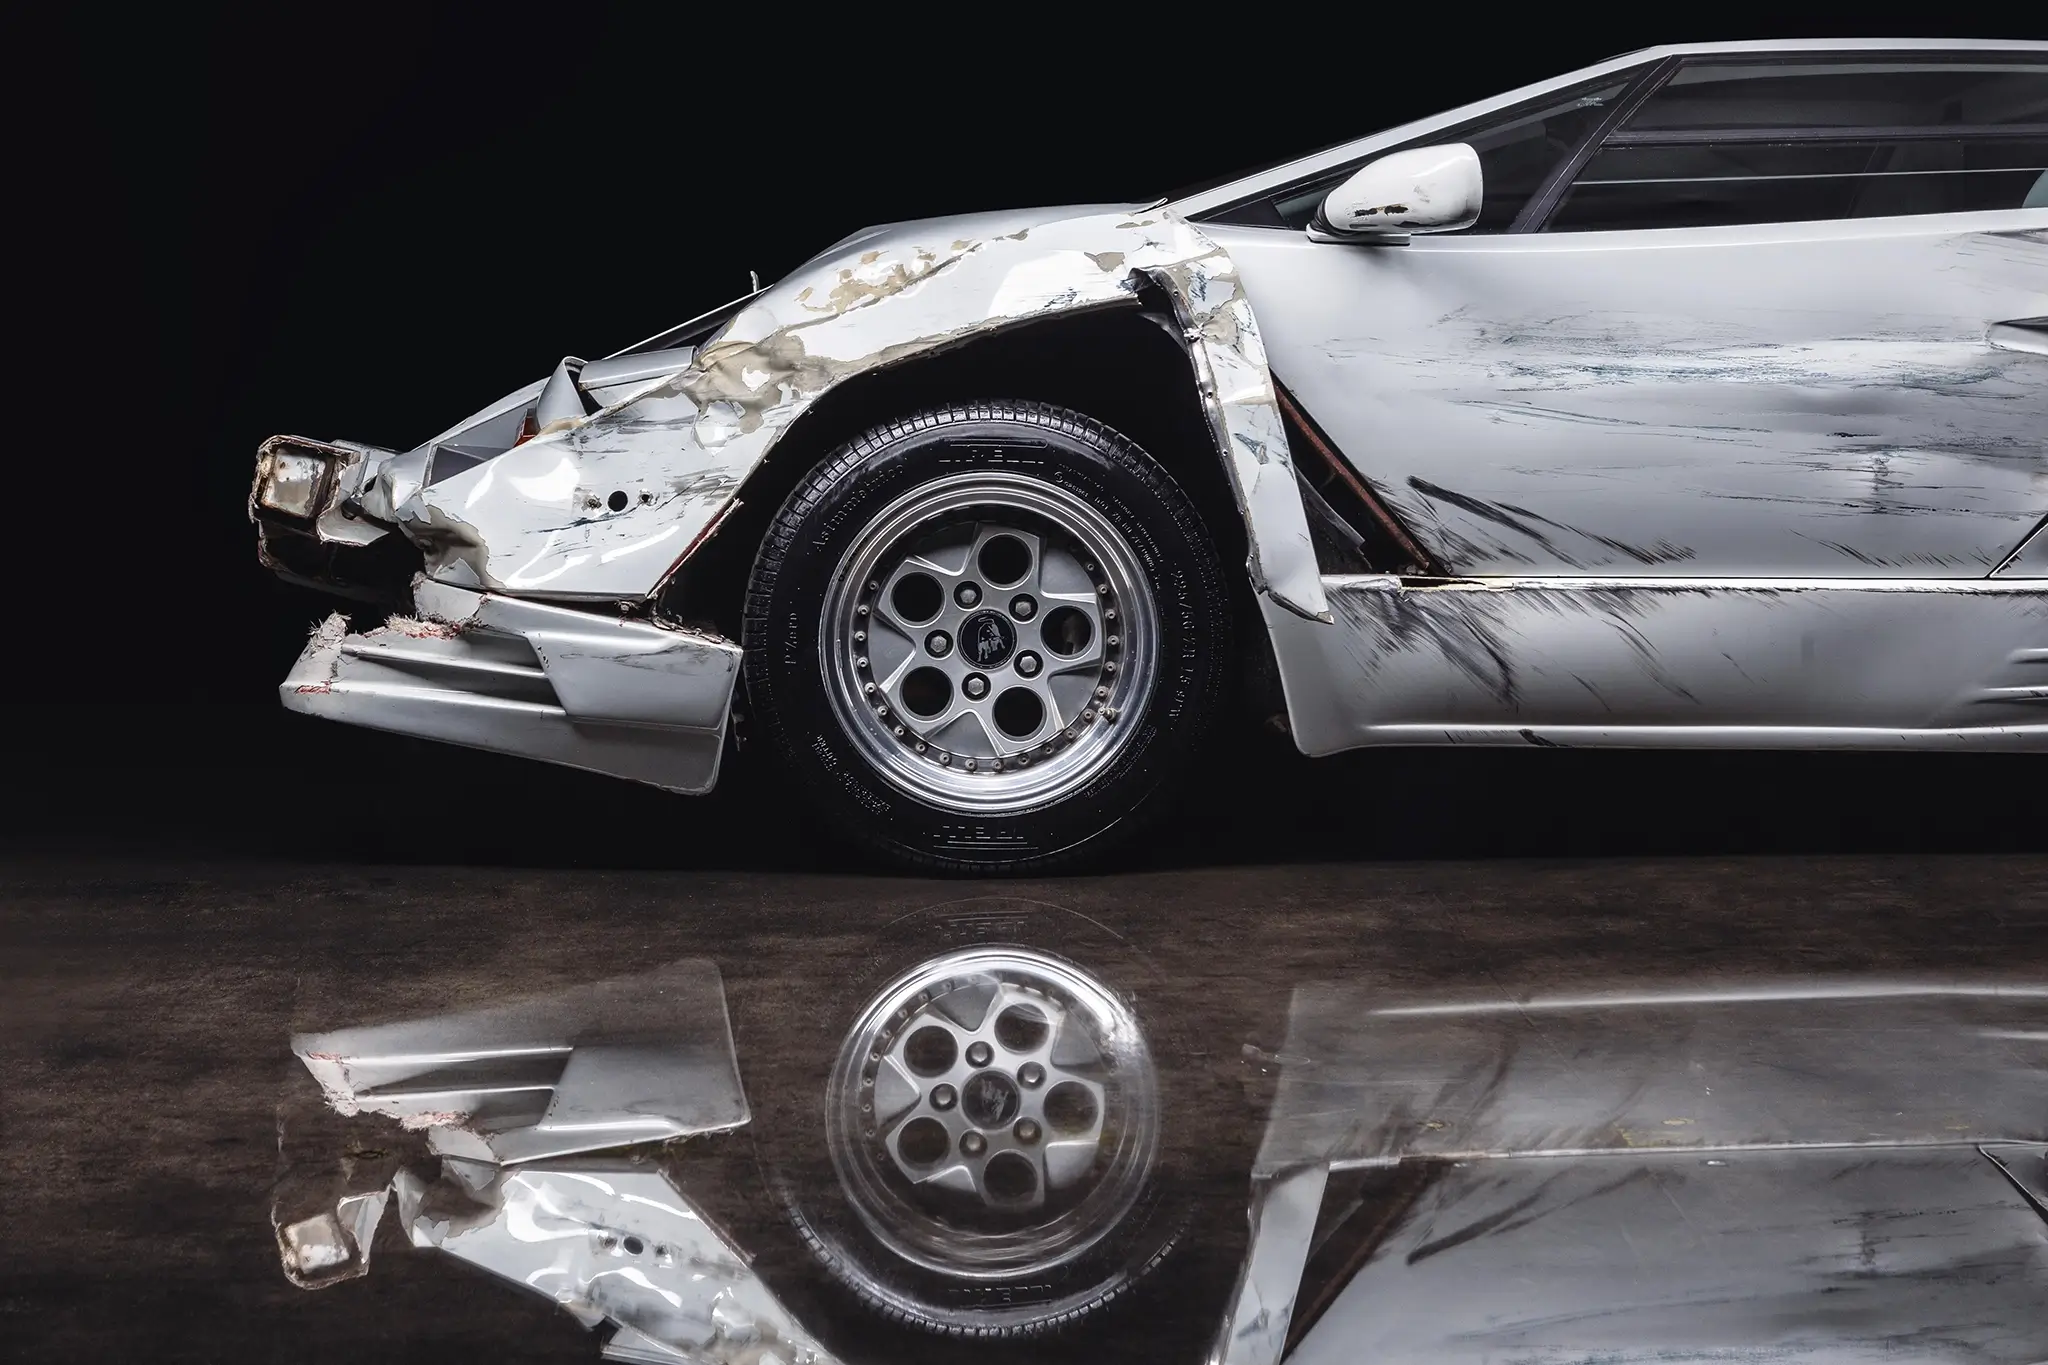 Leilão Lamborghini Countach - Wolf of Wall Street - Secção lateral dianteira